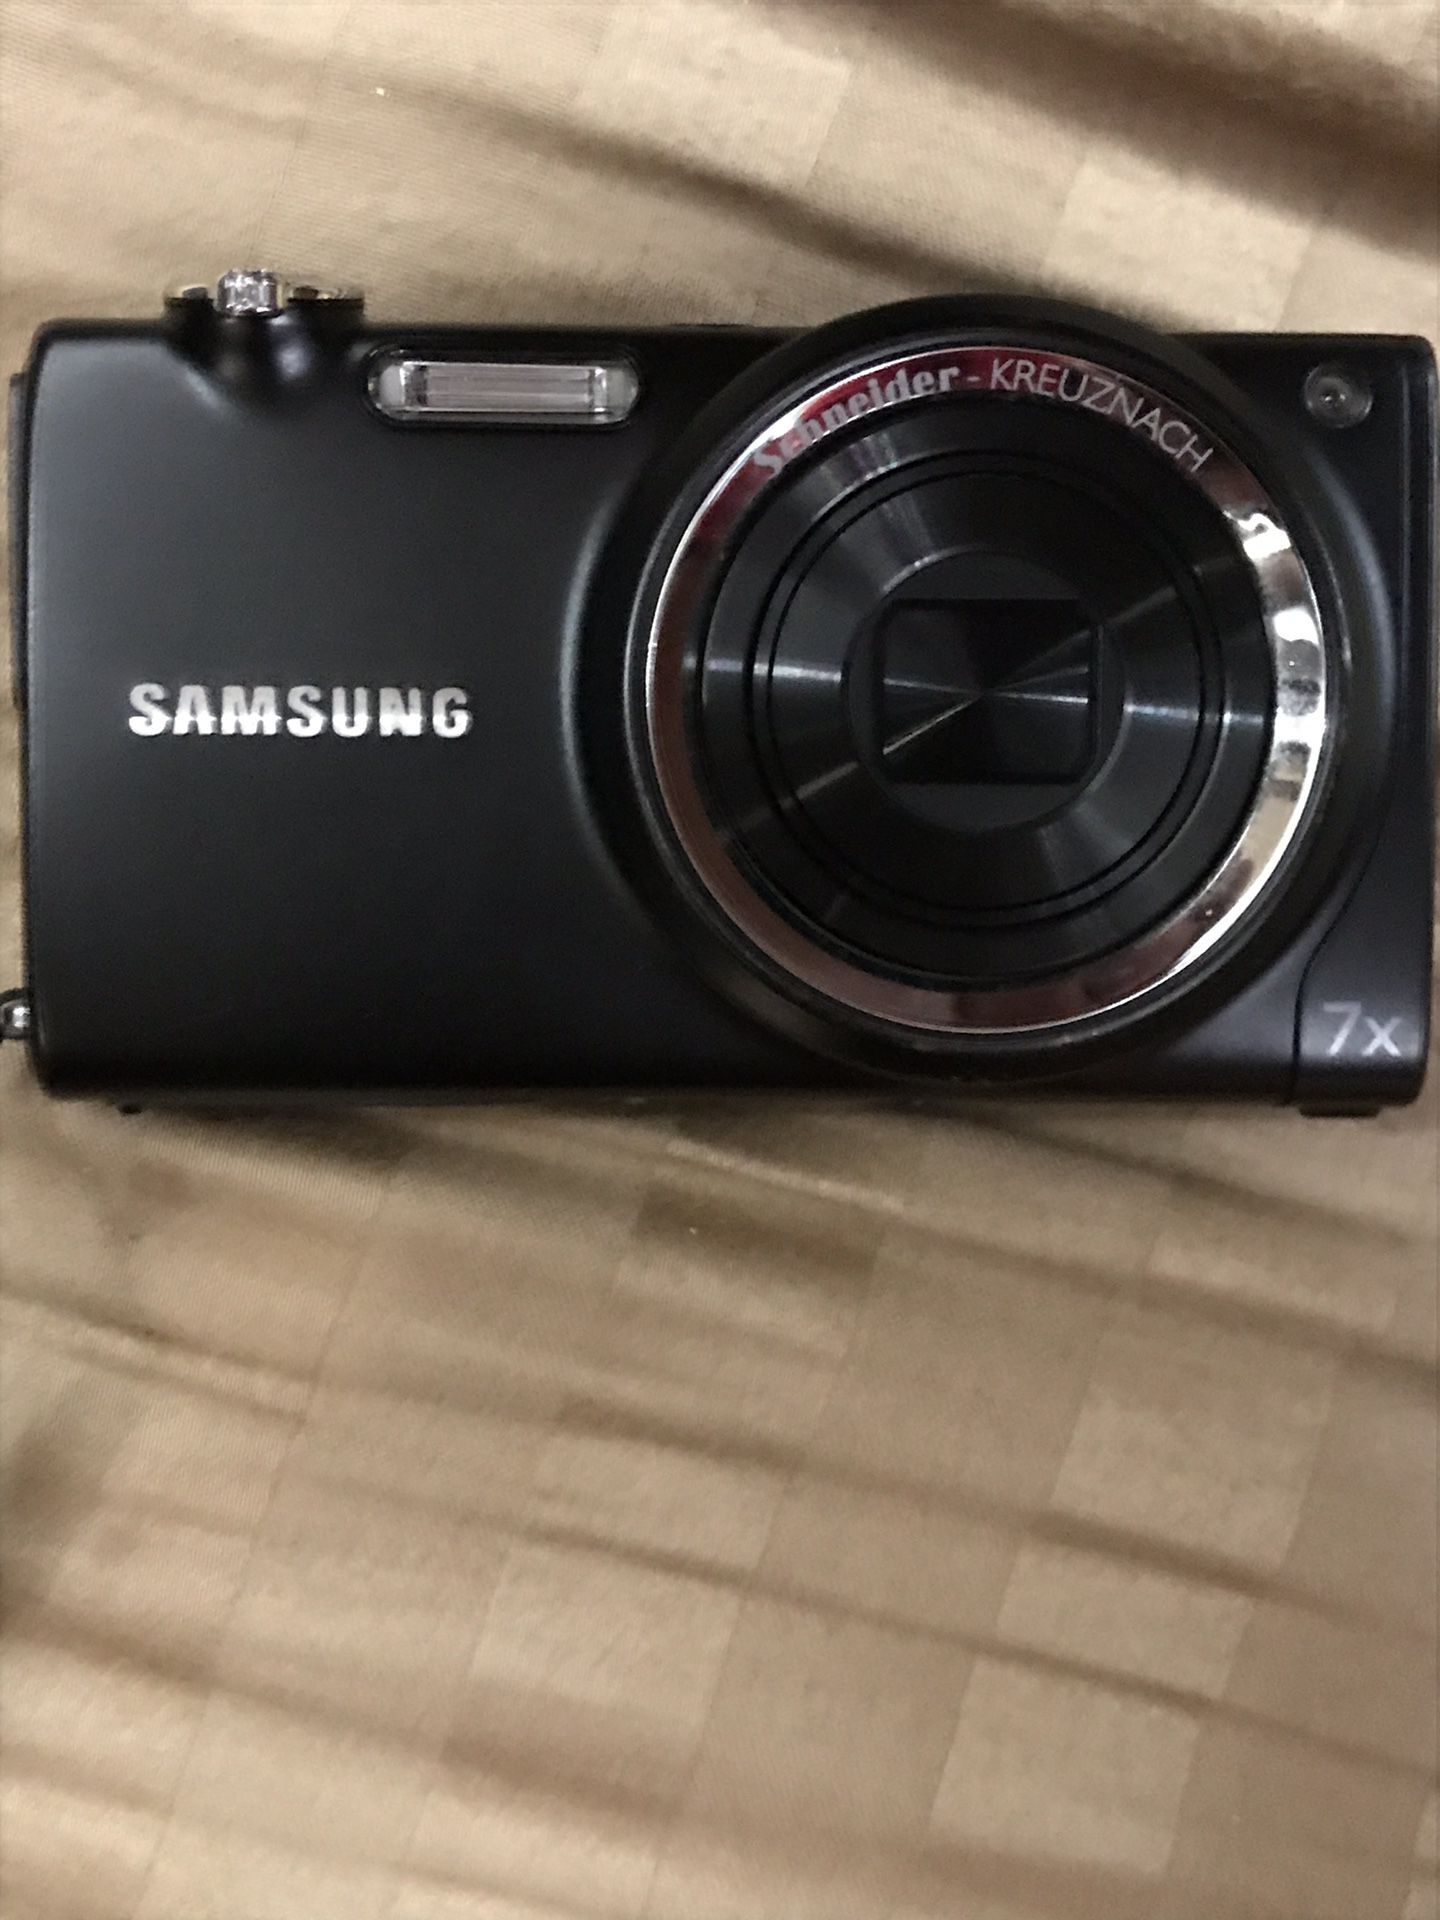 Samsung digital camera 📷